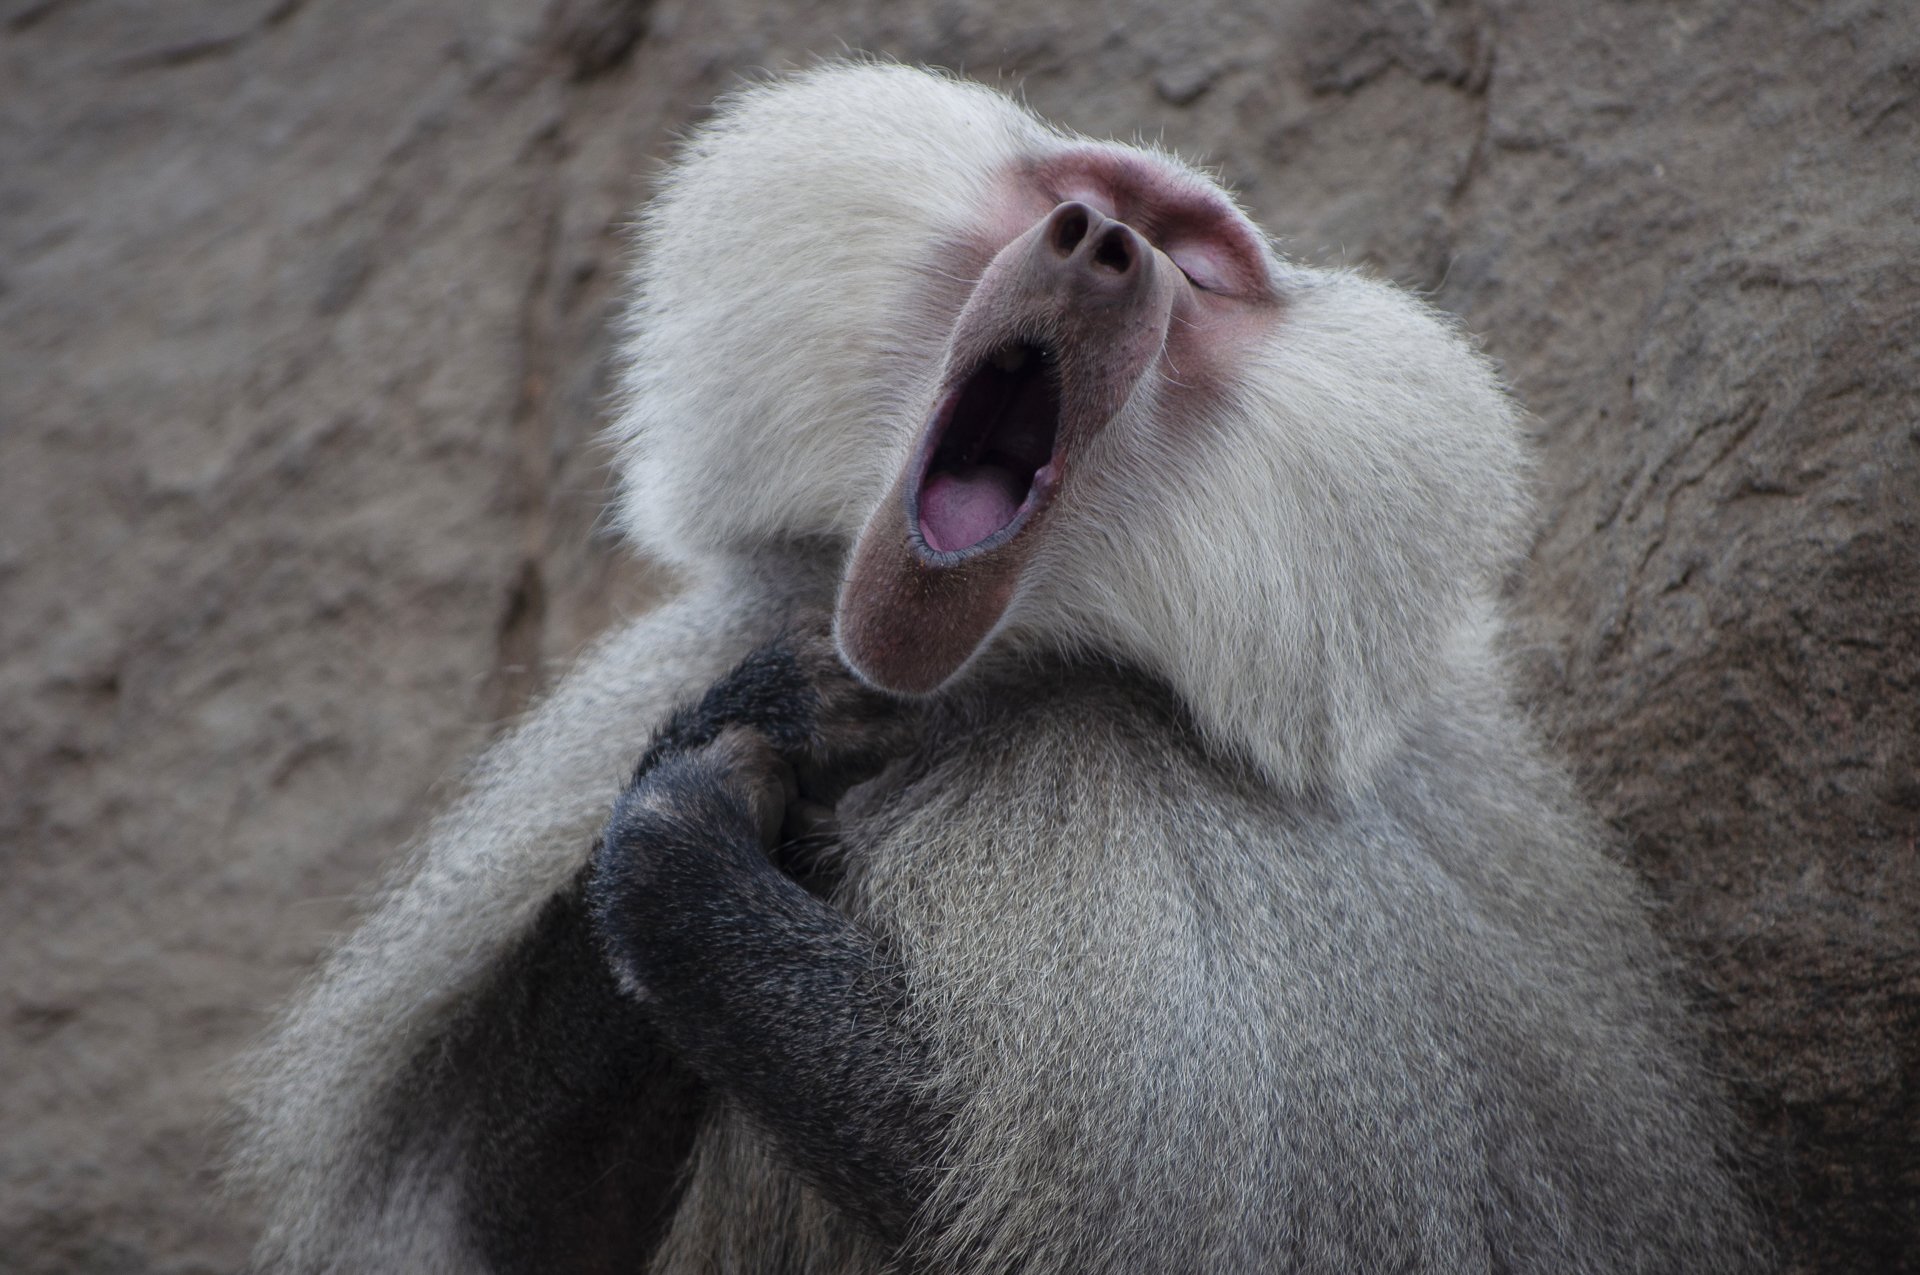 사우디아라비아에서 포착된 개코원숭이가 두손을 모은 채 입을 크게 벌리고 있다. 마치 미래의 파바로티를 꿈꾸는 듯하다. [©Clemence Guinard/Comedywildlifephoto.com]